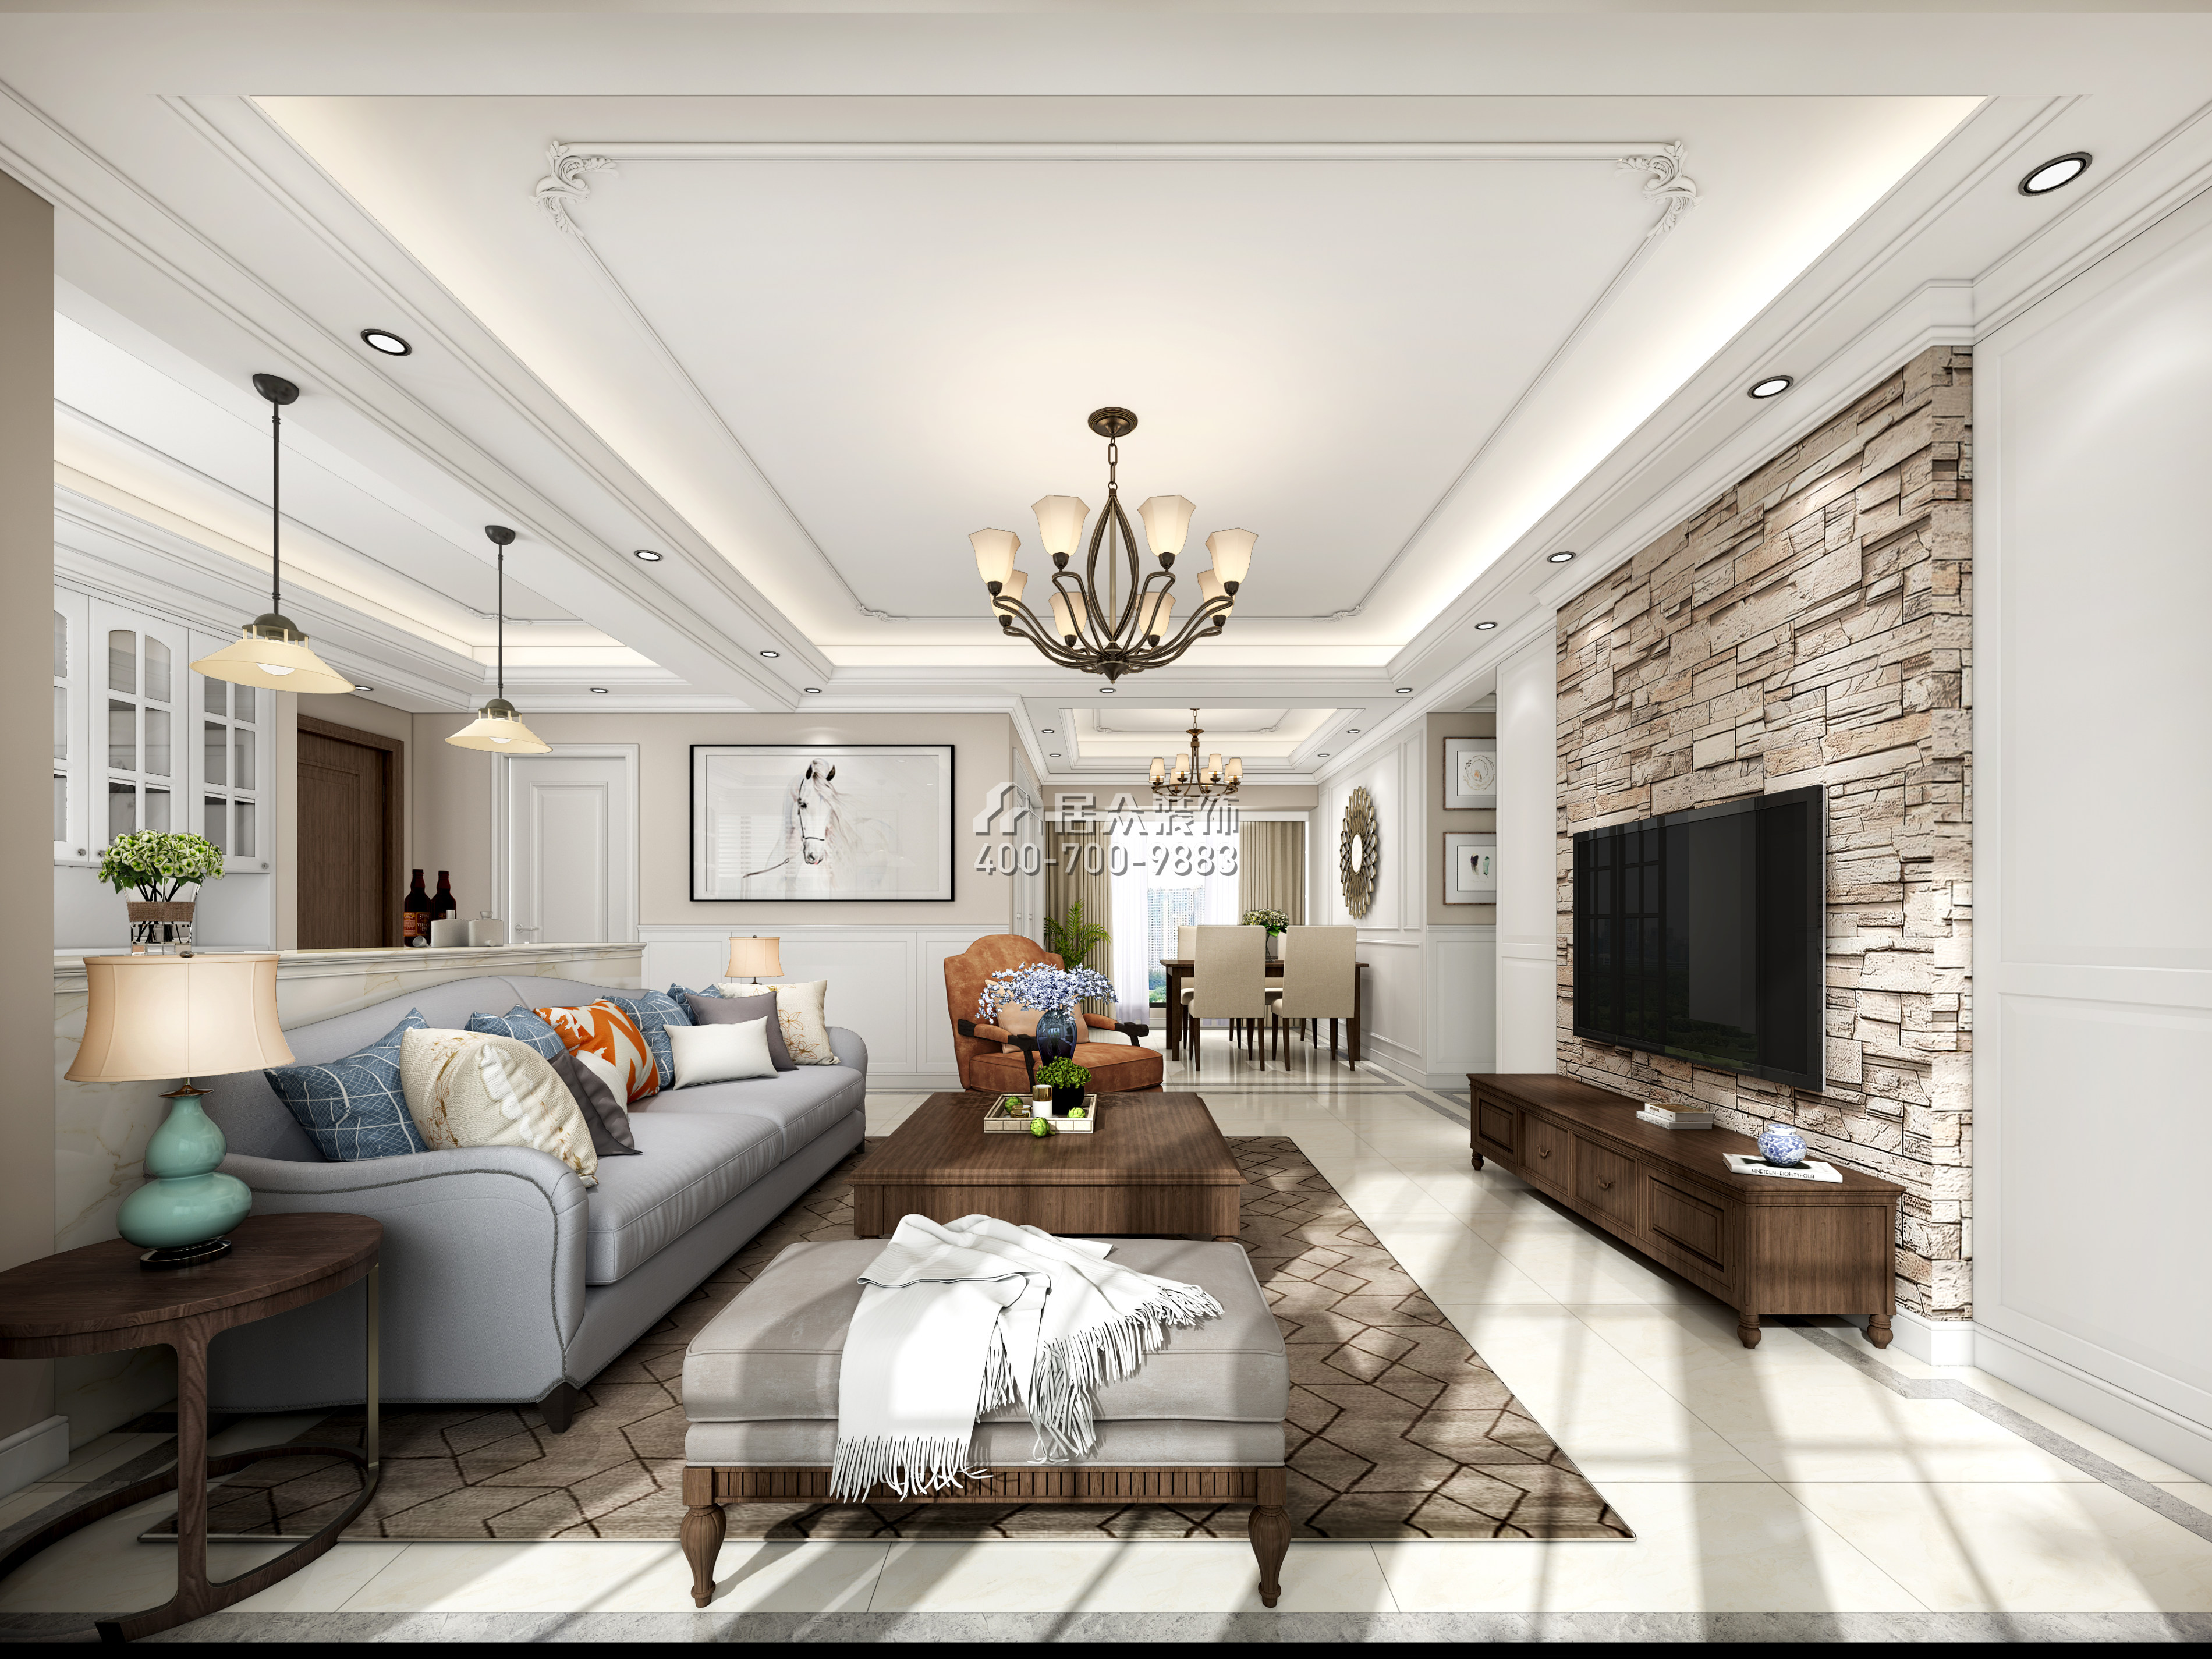 鸿荣源尚峰138平方米美式风格平层户型客厅装修效果图